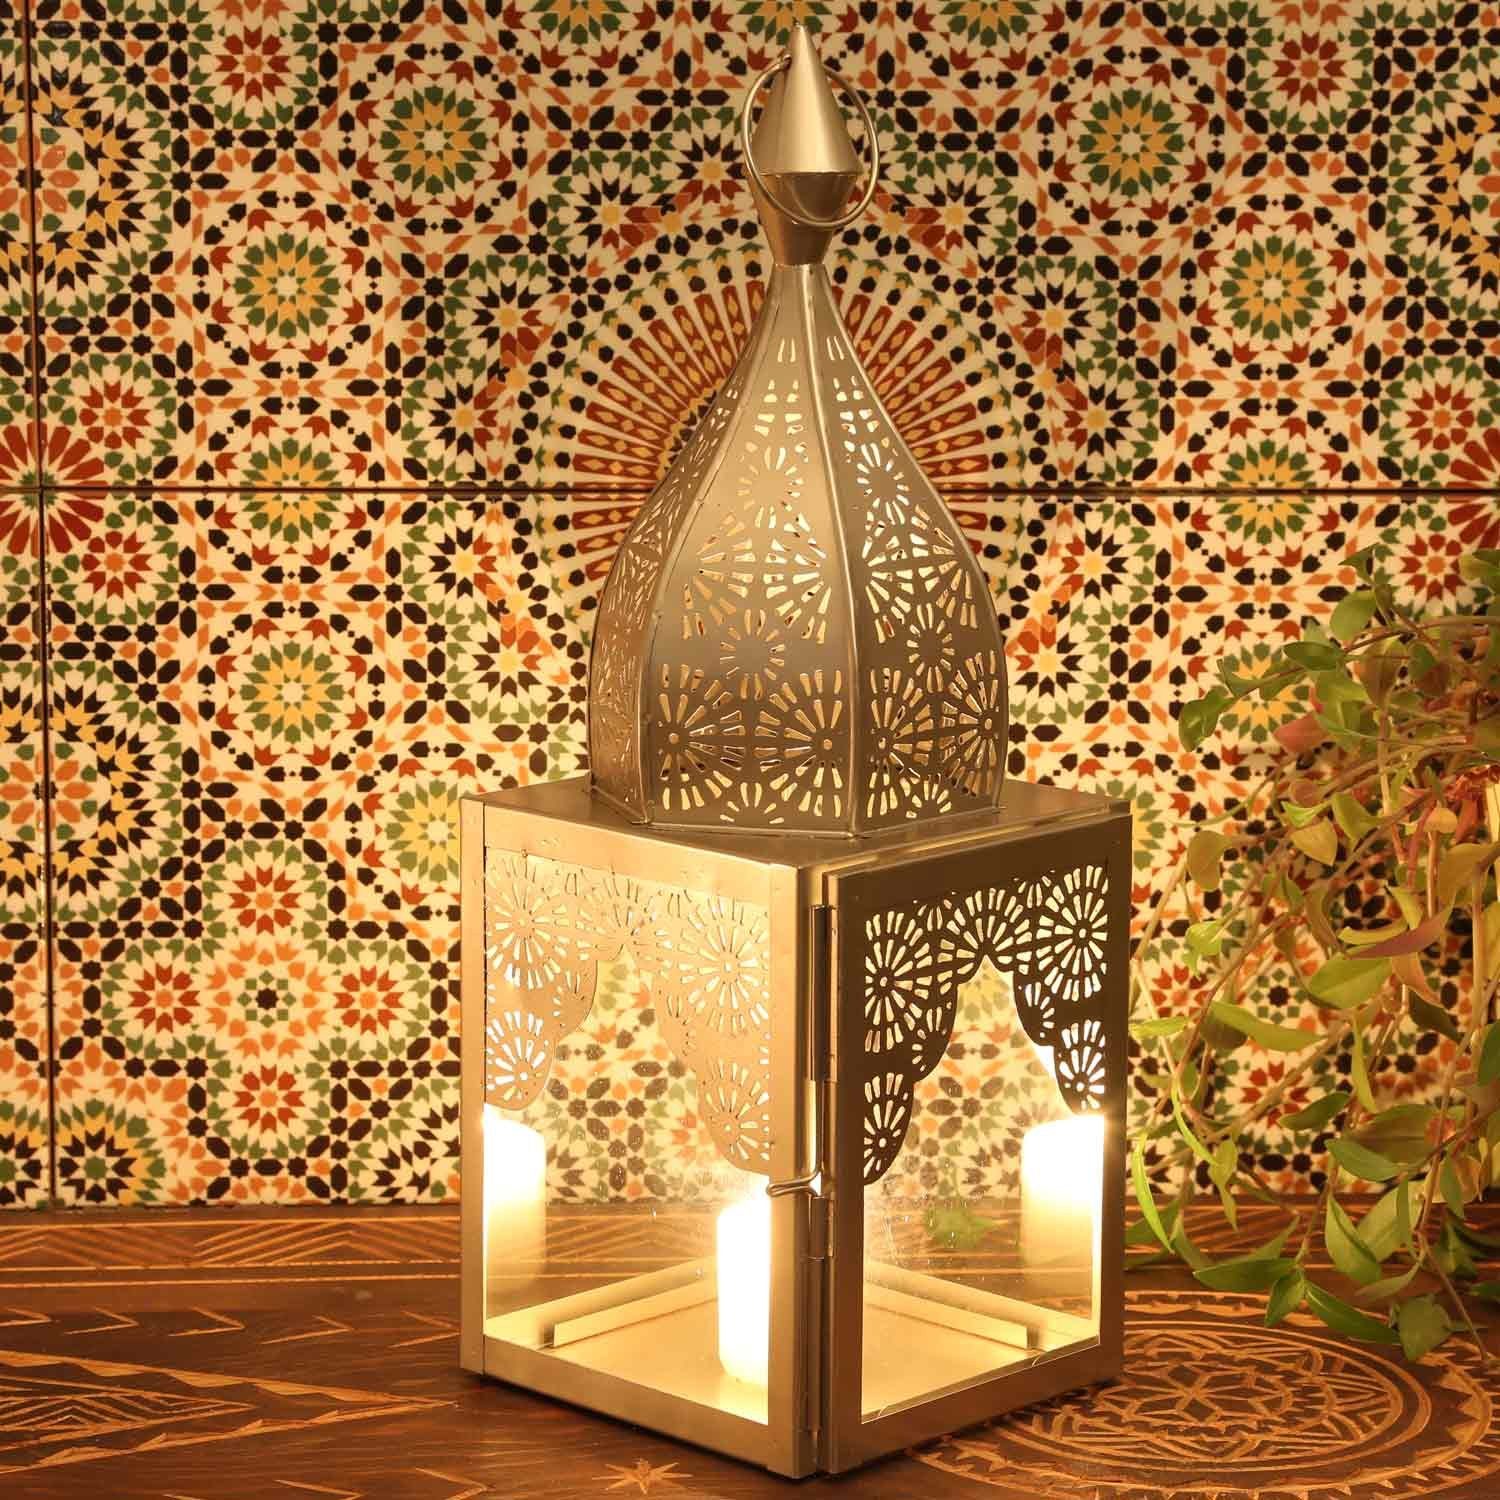 Casa Moro Bodenwindlicht Glas Nacht, aus Modena Marokkanische Minarette 1001 Windlicht IRL670, Orientalisches Weihnachtsbeleuchtung, Kunsthandwerk, marokkanische Glaslaterne M & aus Kerzenhalter Metall schöne Laterne Minarett wie Form, Höhe Silber 45cm